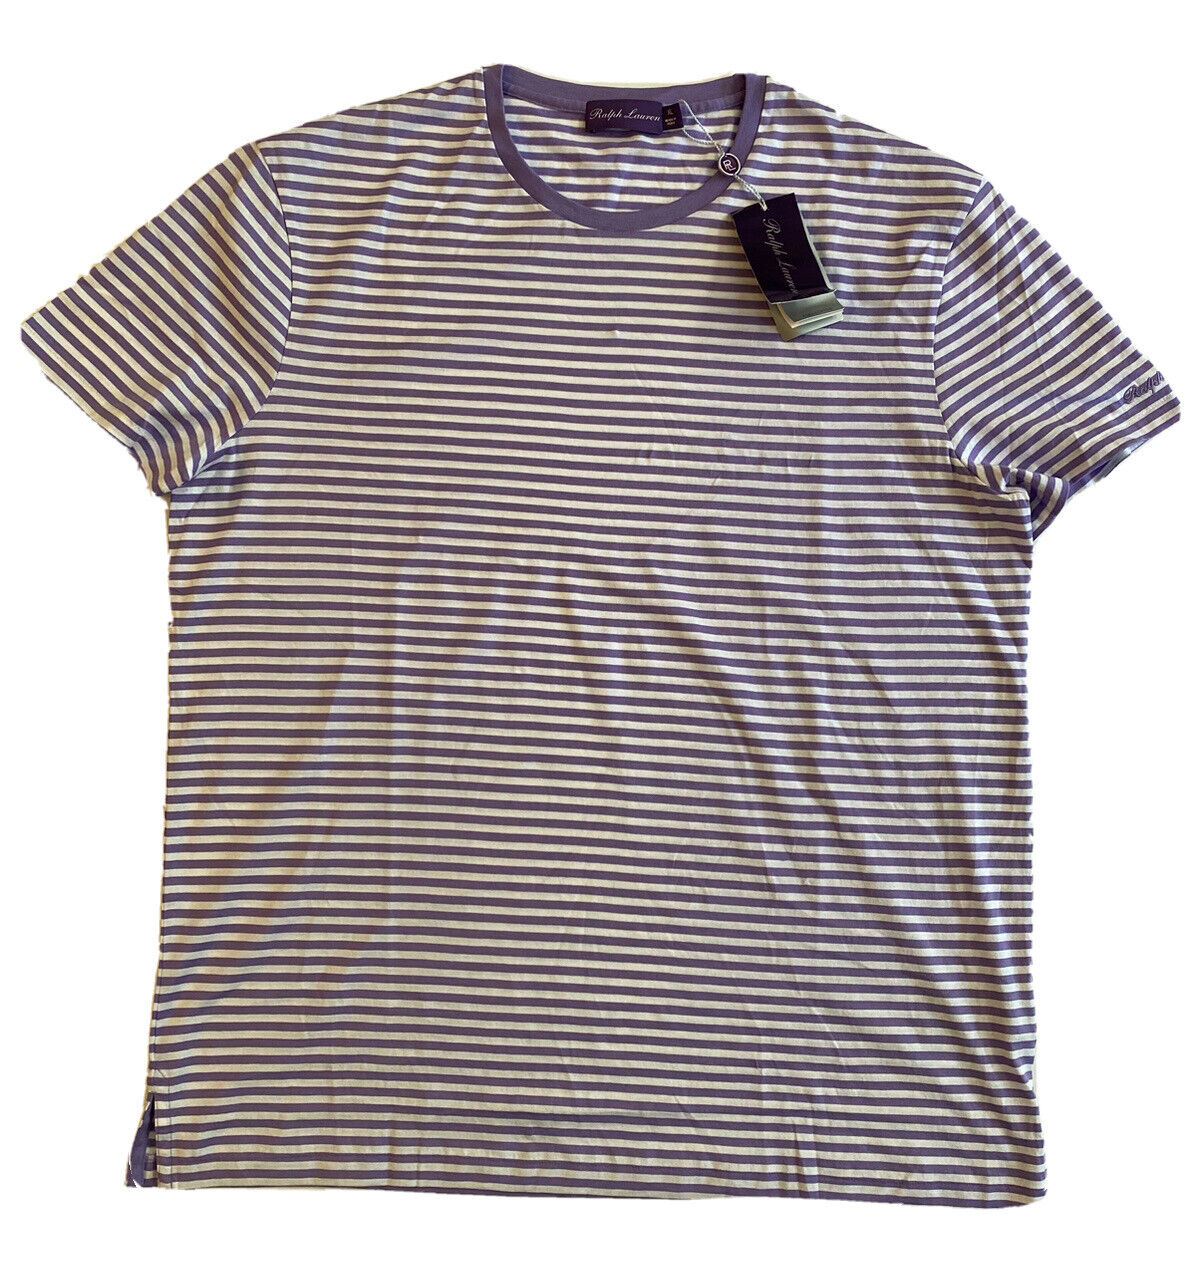 Трикотажная футболка в лавандовую полоску Ralph Lauren Purple Label, NWT, 195 долларов, размер XL 